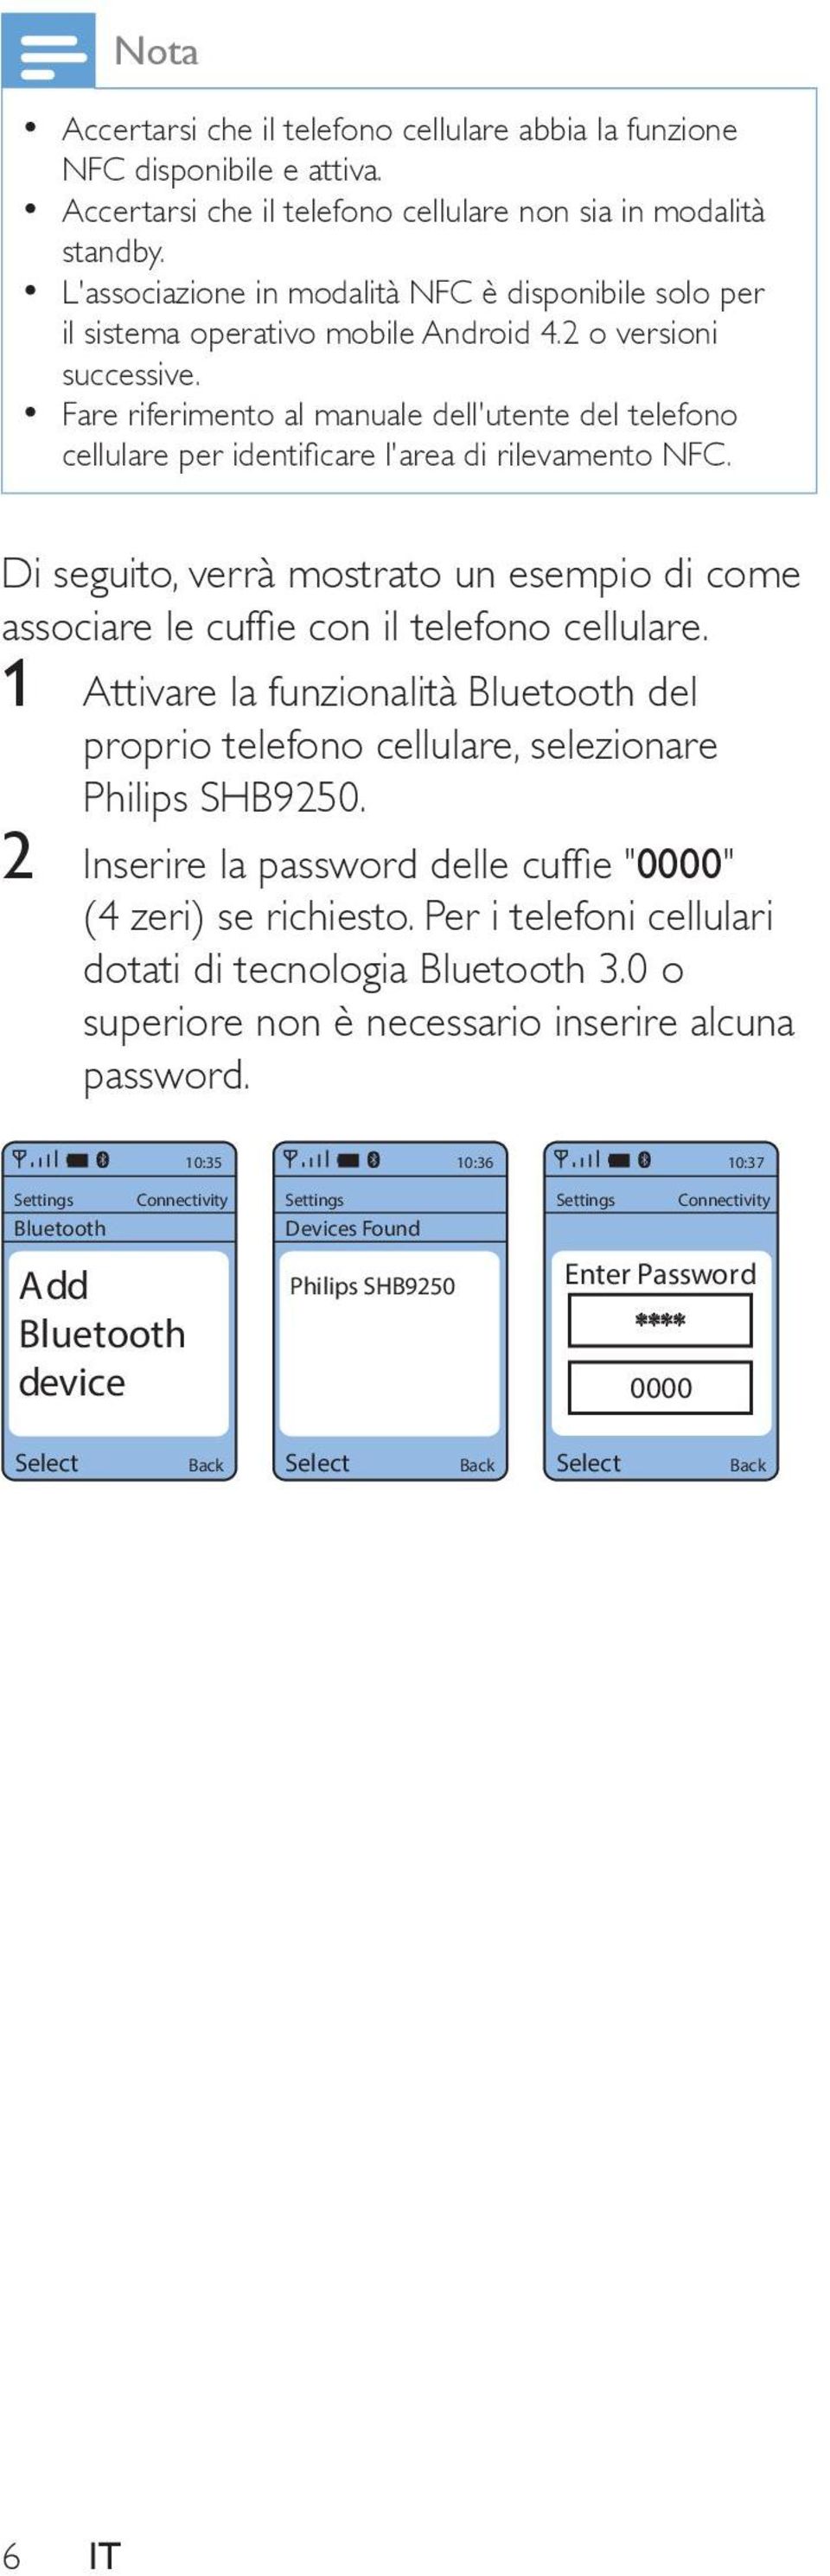 Fare riferimento al manuale dell'utente del telefono cellulare per identificare l'area di rilevamento NFC. Di seguito, verrà mostrato un esempio di come associare le cuffie con il telefono cellulare.